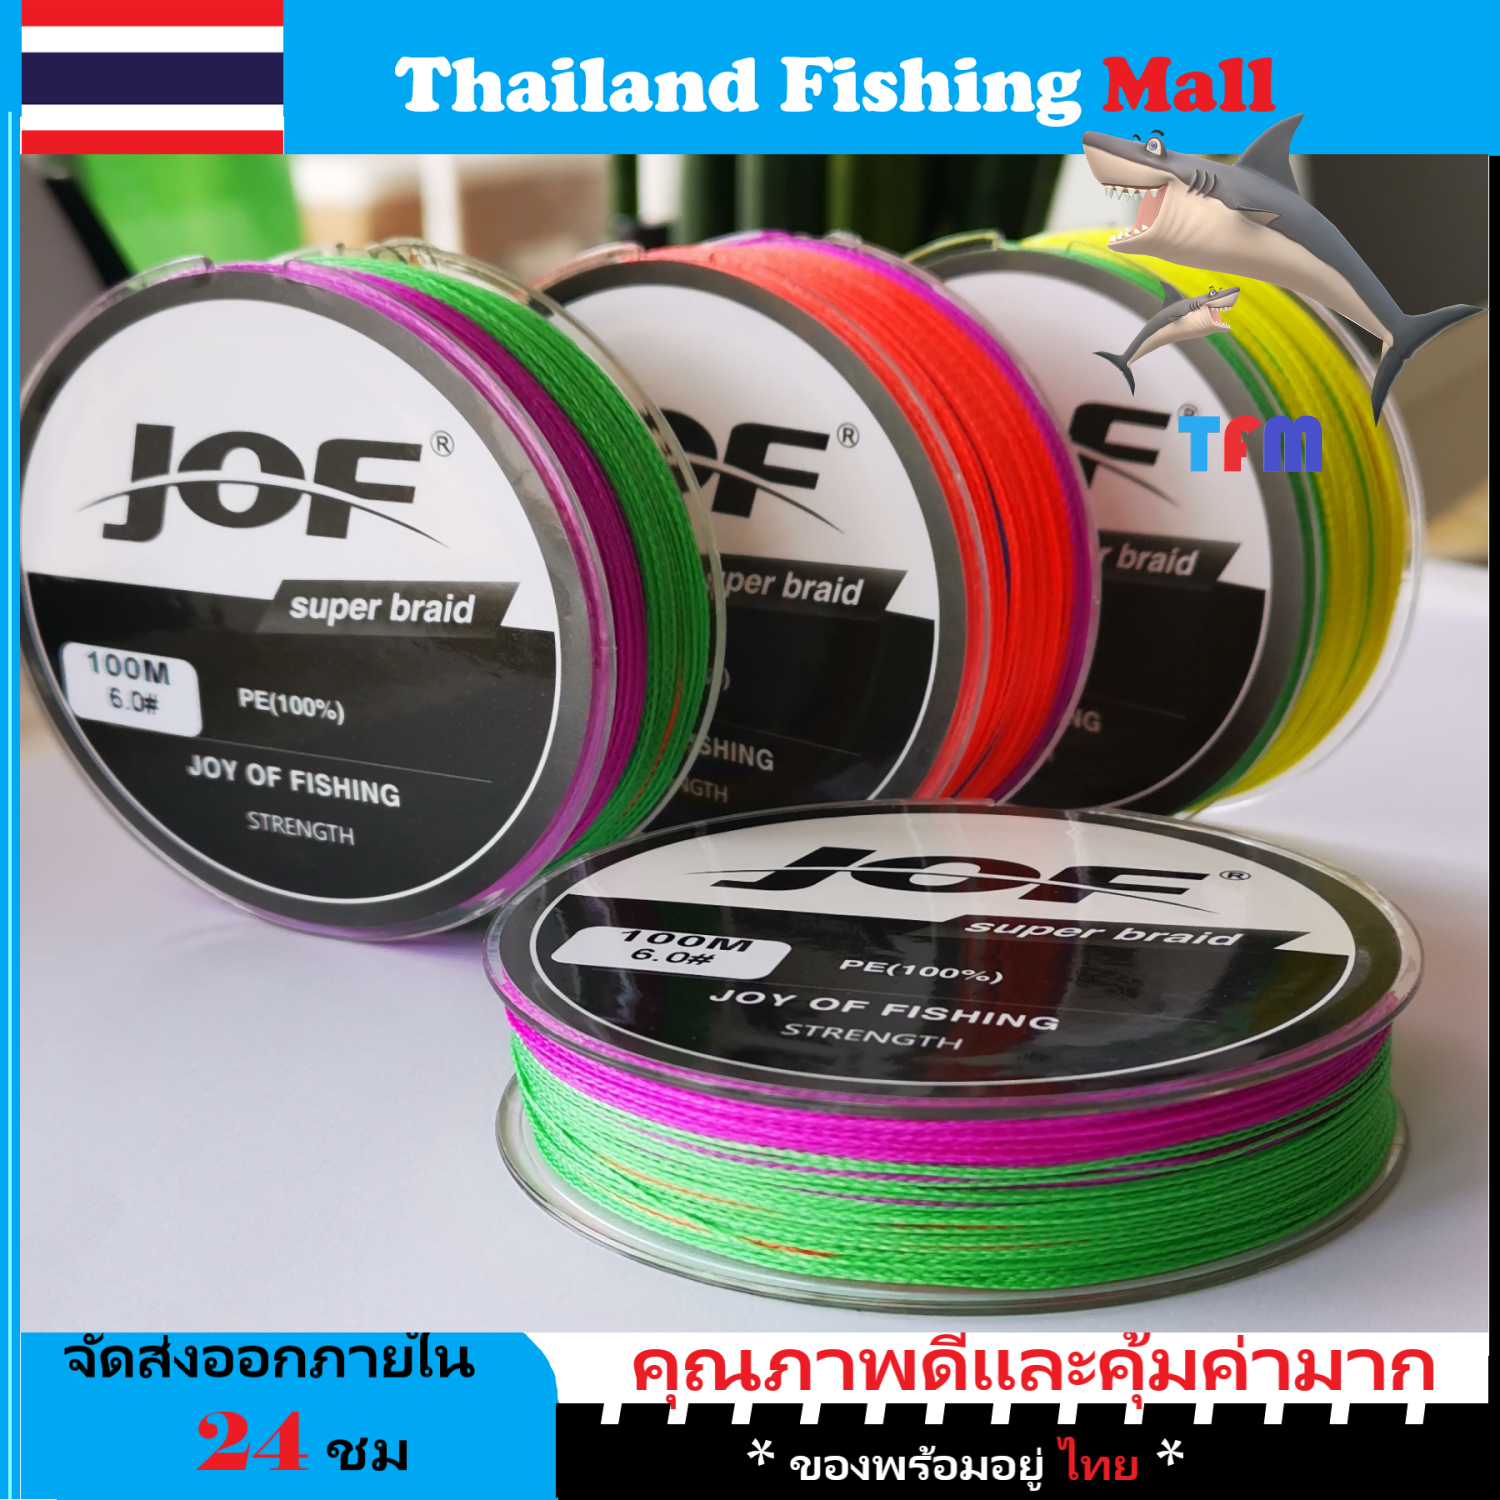 1-2 วัน (ส่งไว ราคาส่ง) สาย PE ถัก4 100ม - ตกปลา - JOF Fishing line  * เหนียว นุ่ม แบรนด์คุณภาพ *แข็งแรงมาก【Thailand Fishing Mall】